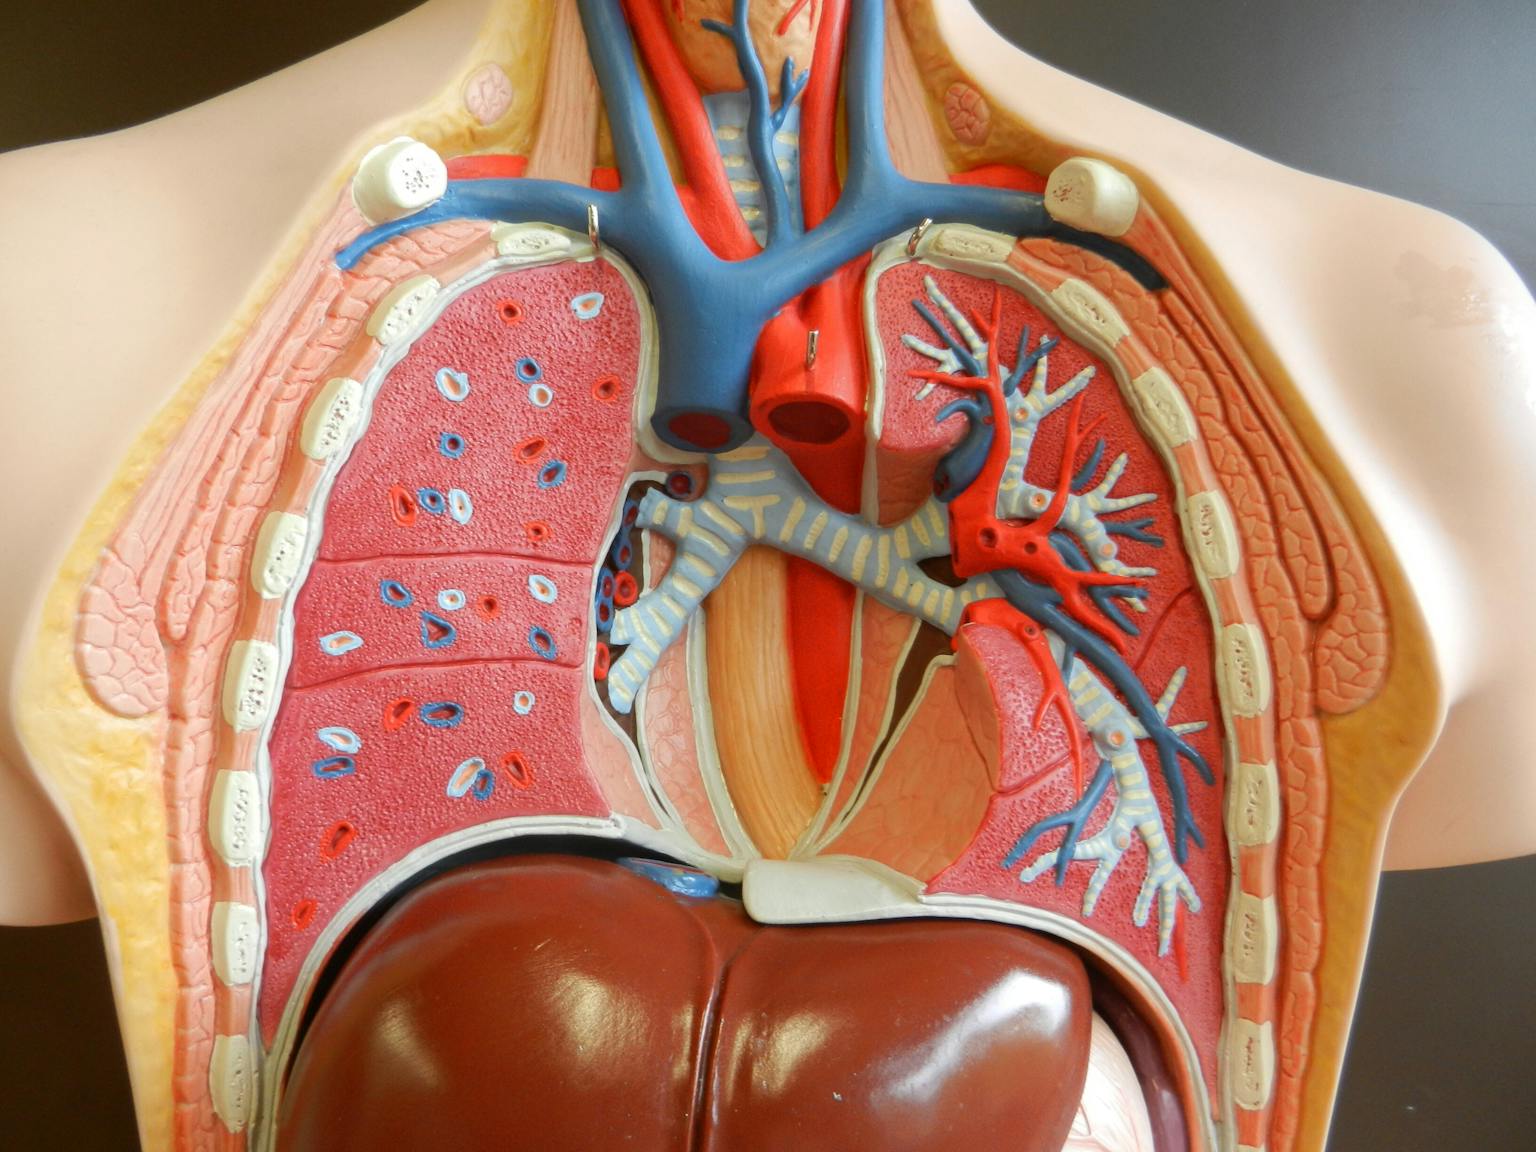 Een model van een menselijke torso met de interne organen.